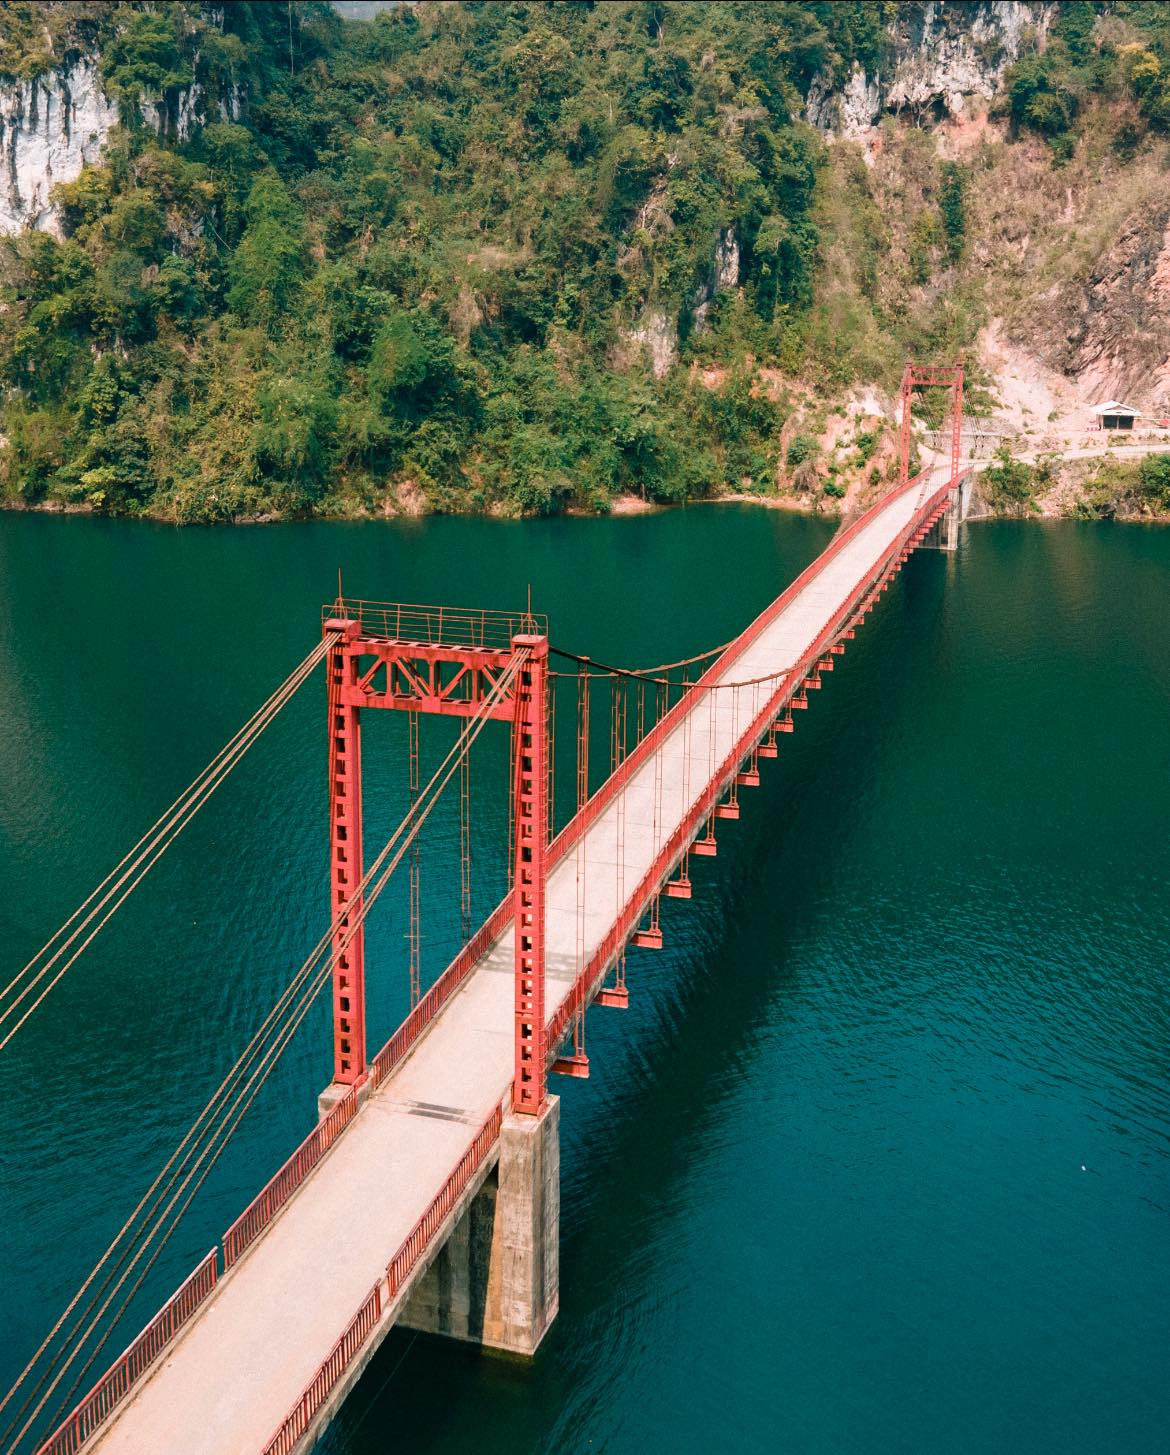 Phát hiện cây cầu treo đẹp như tranh vẽ giữa núi rừng Điện Biên, nhiều người không ngờ đây là khung cảnh tại Việt Nam- Ảnh 10.